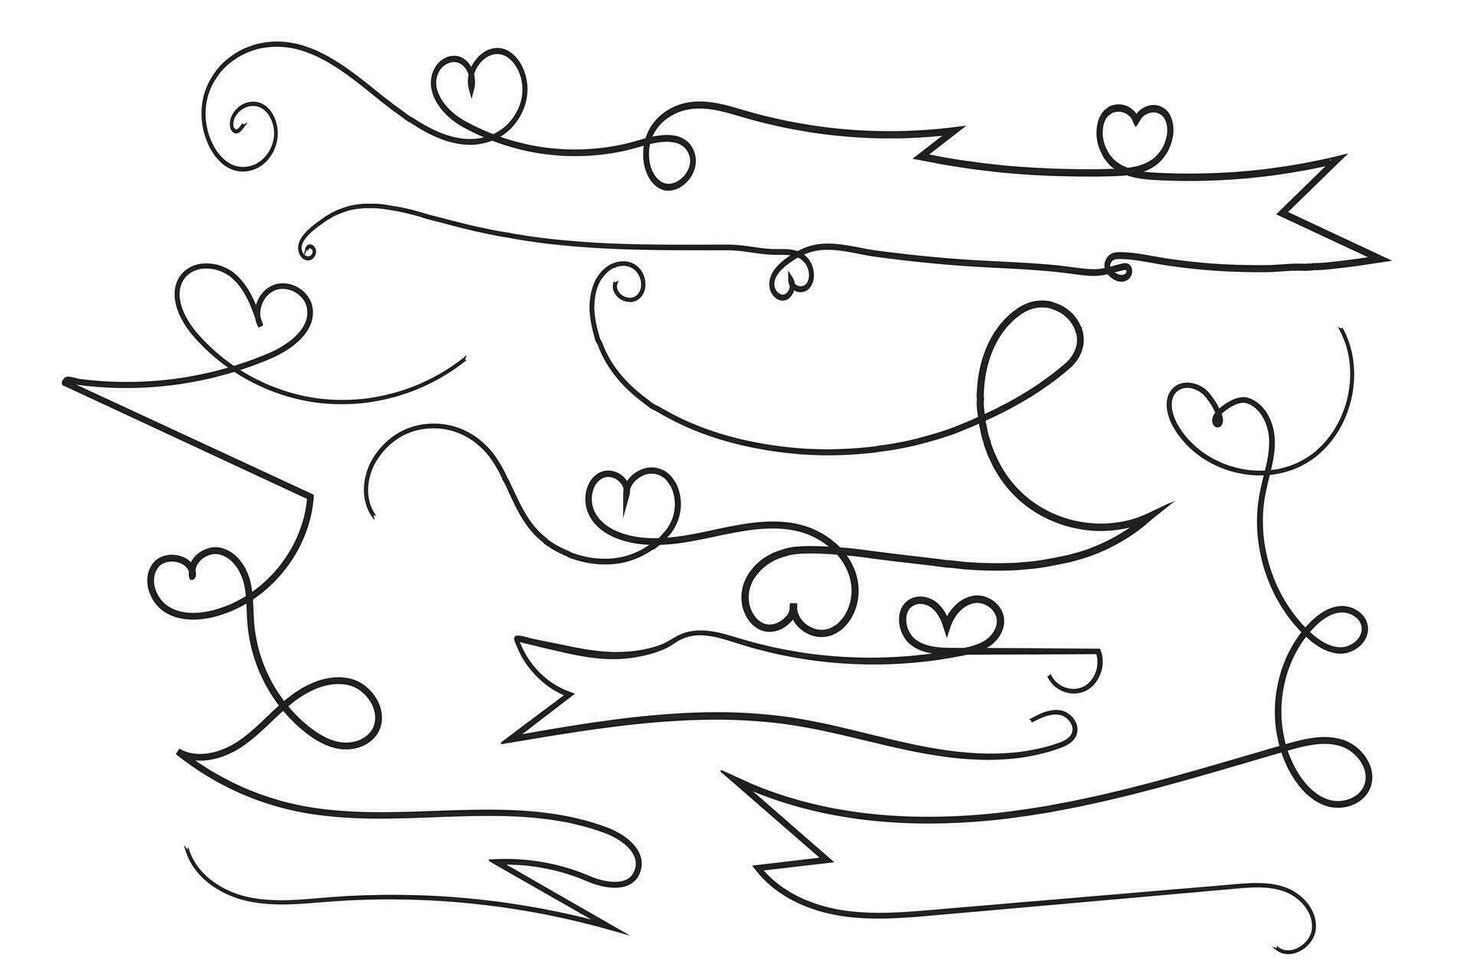 valentines dag lockigt hjärtan stil kalligrafi översikt band, hand teckning calligraphic hjärta band vektor baner, dekorativ hjärtan romantisk kärlek text baner, hjärta skrolla linje översikt band